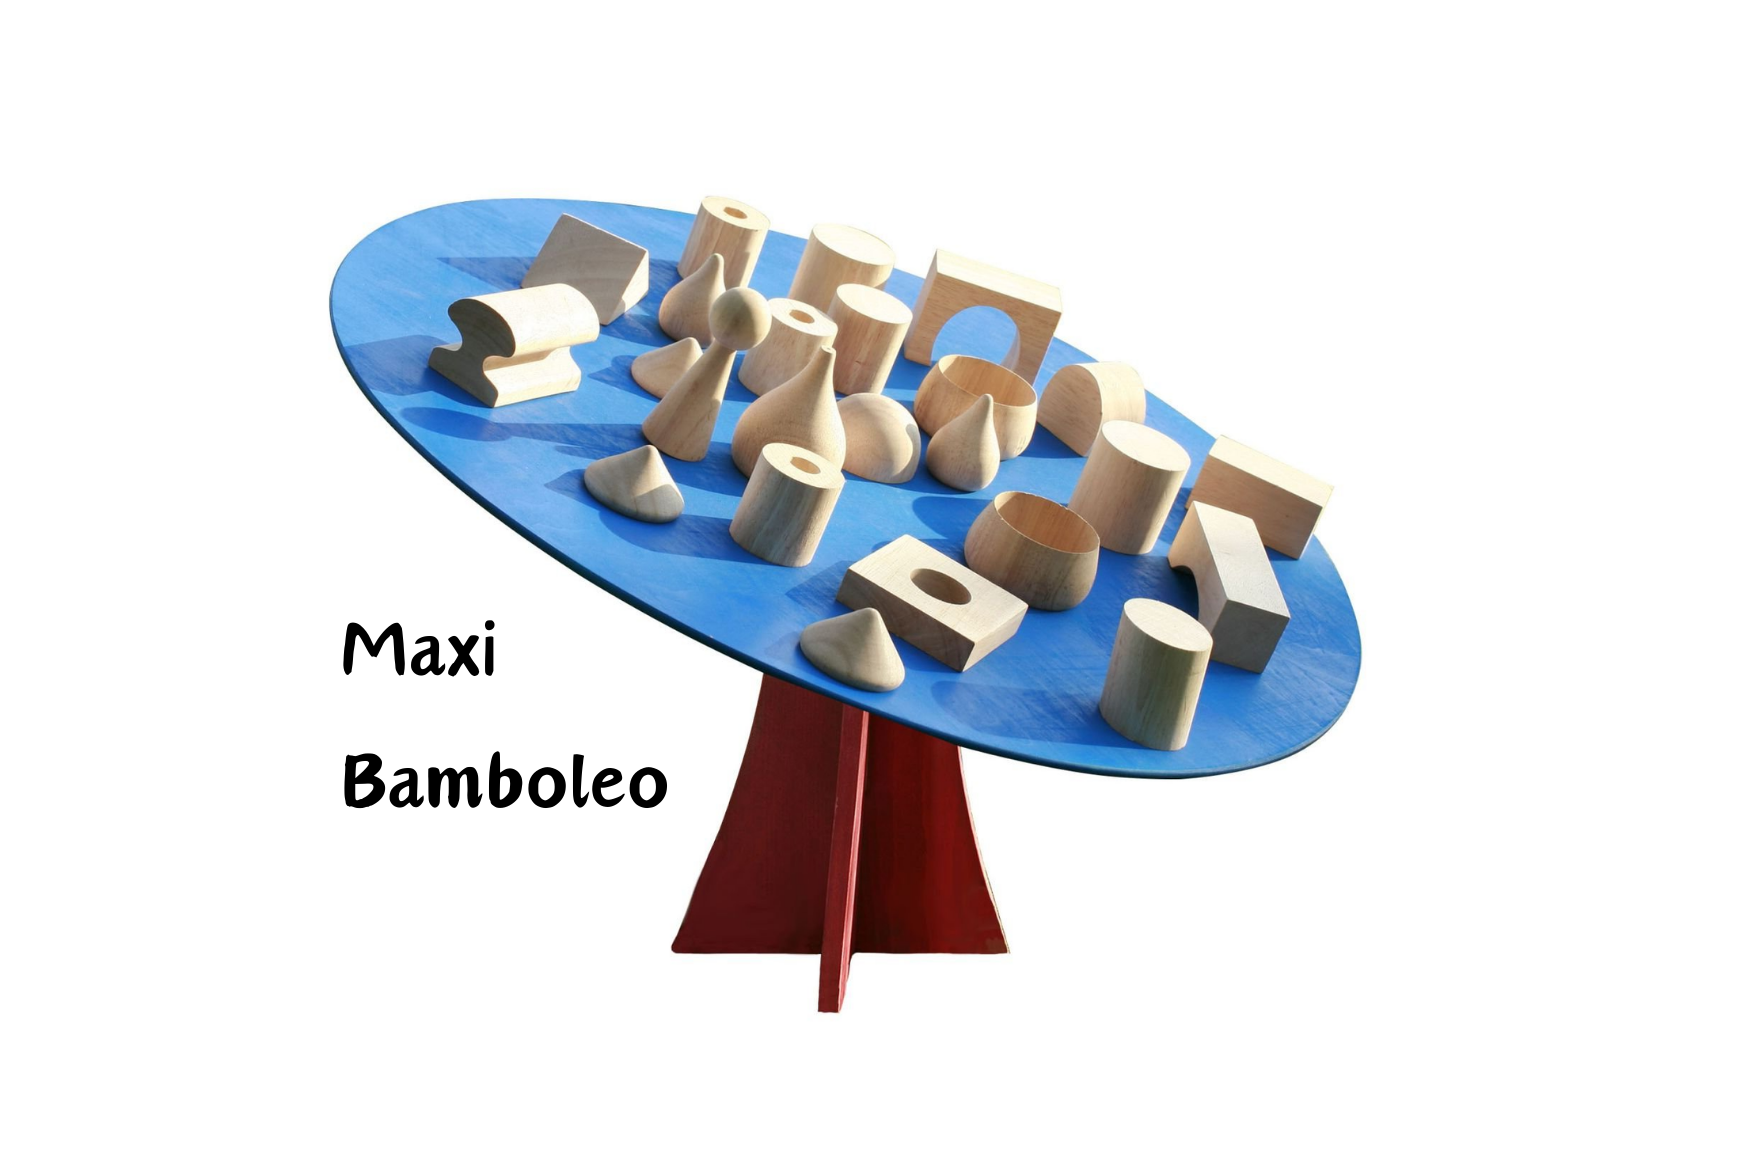 Maxi Bamboleo